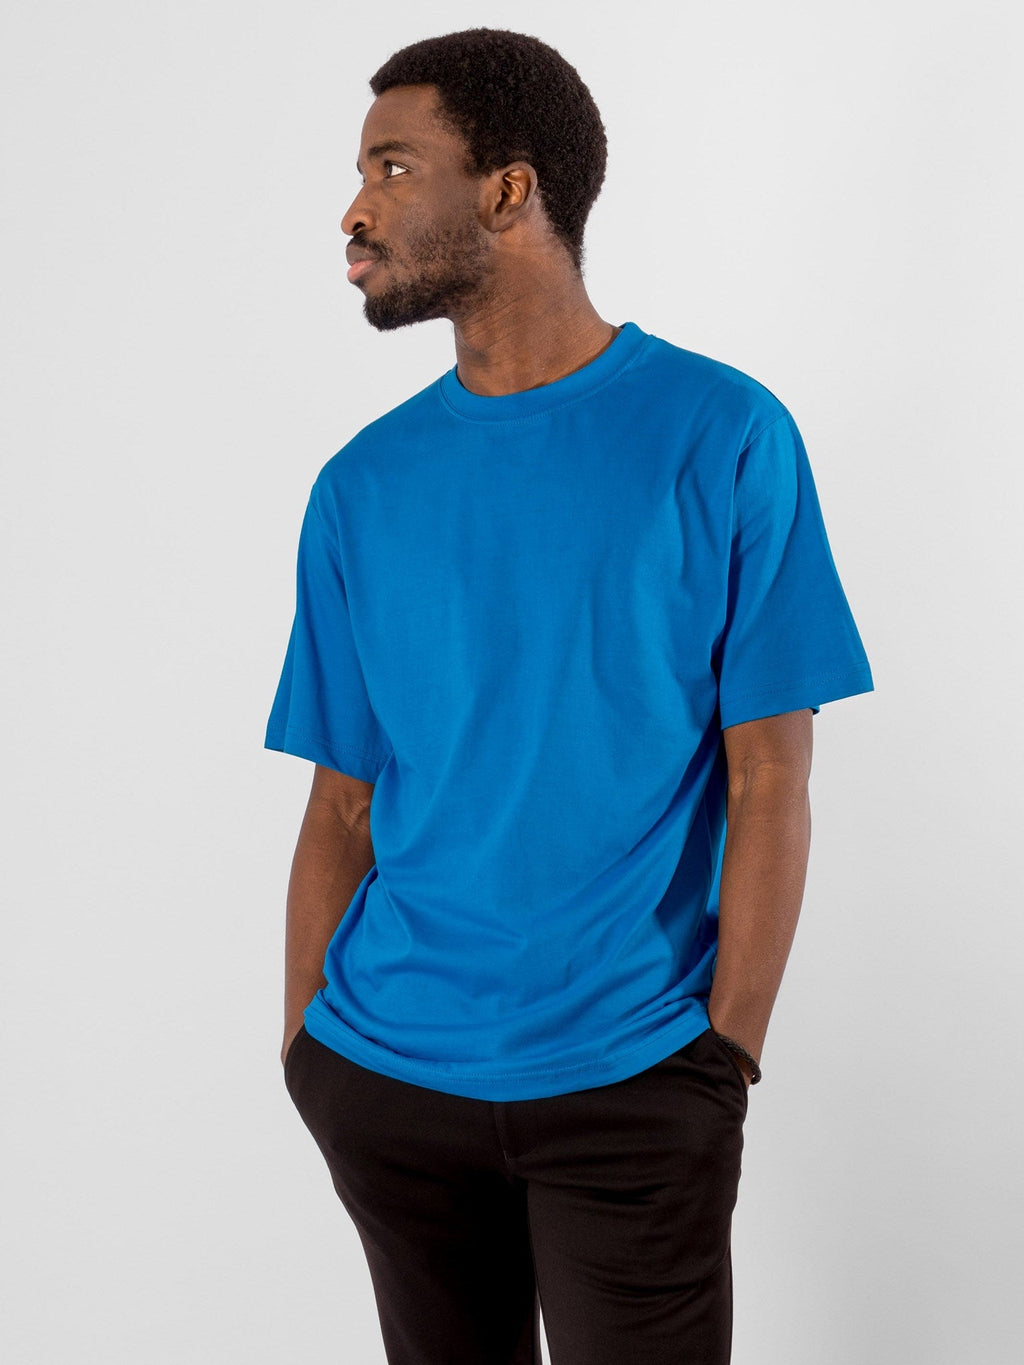 Negabaritiniai marškinėliai - turkio spalvos mėlyna spalva